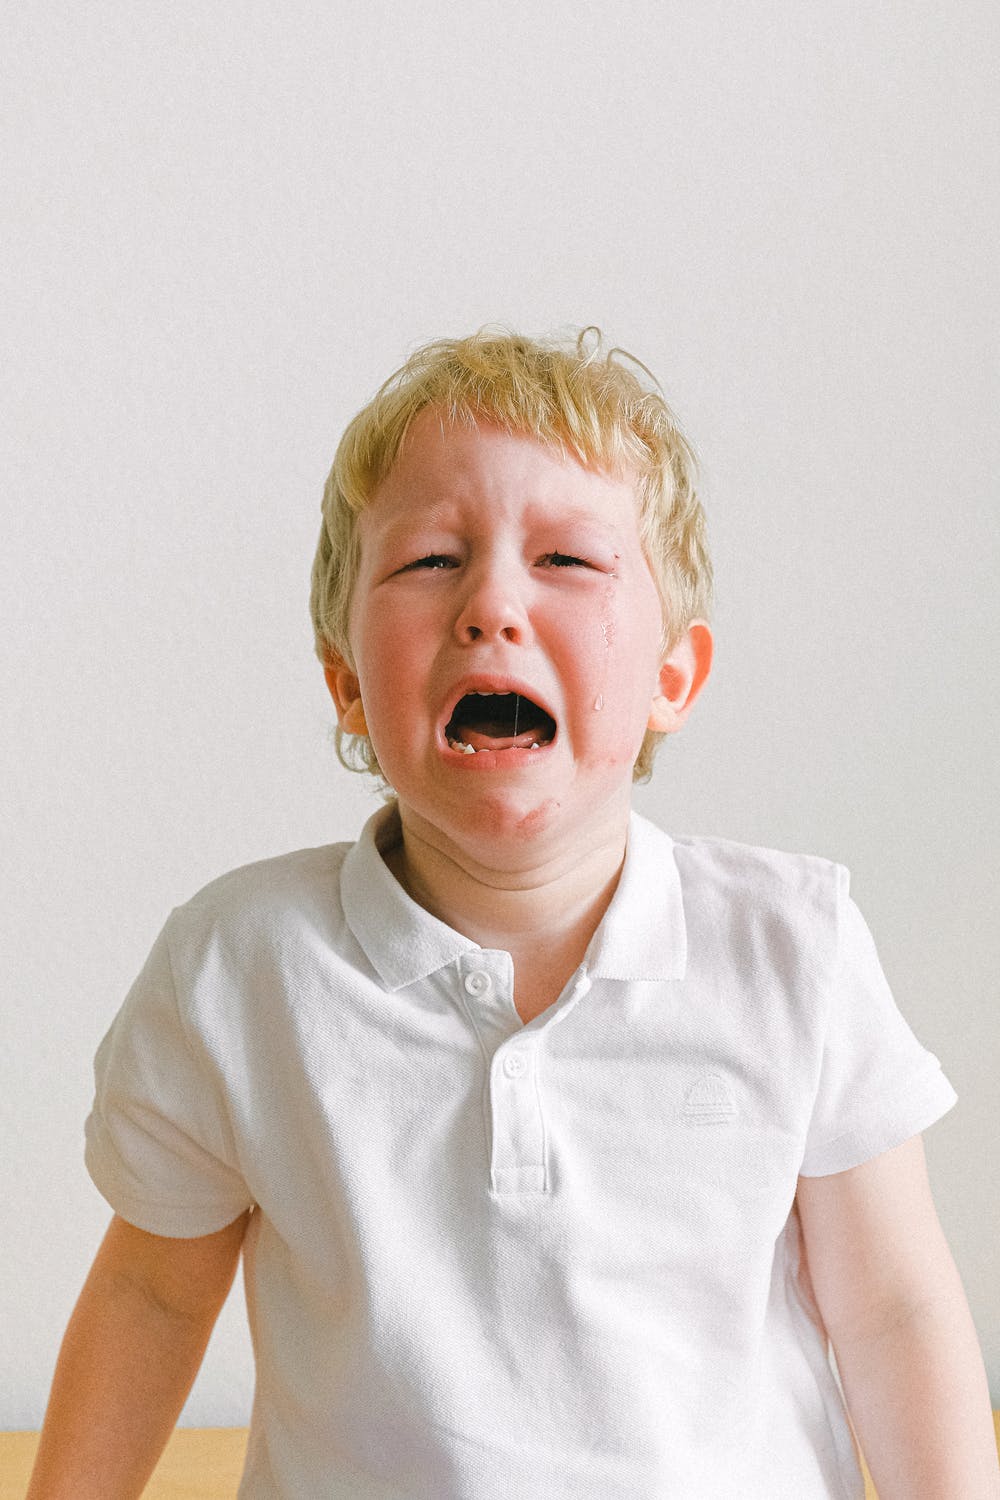 Little boy in tears | Source: Pexels